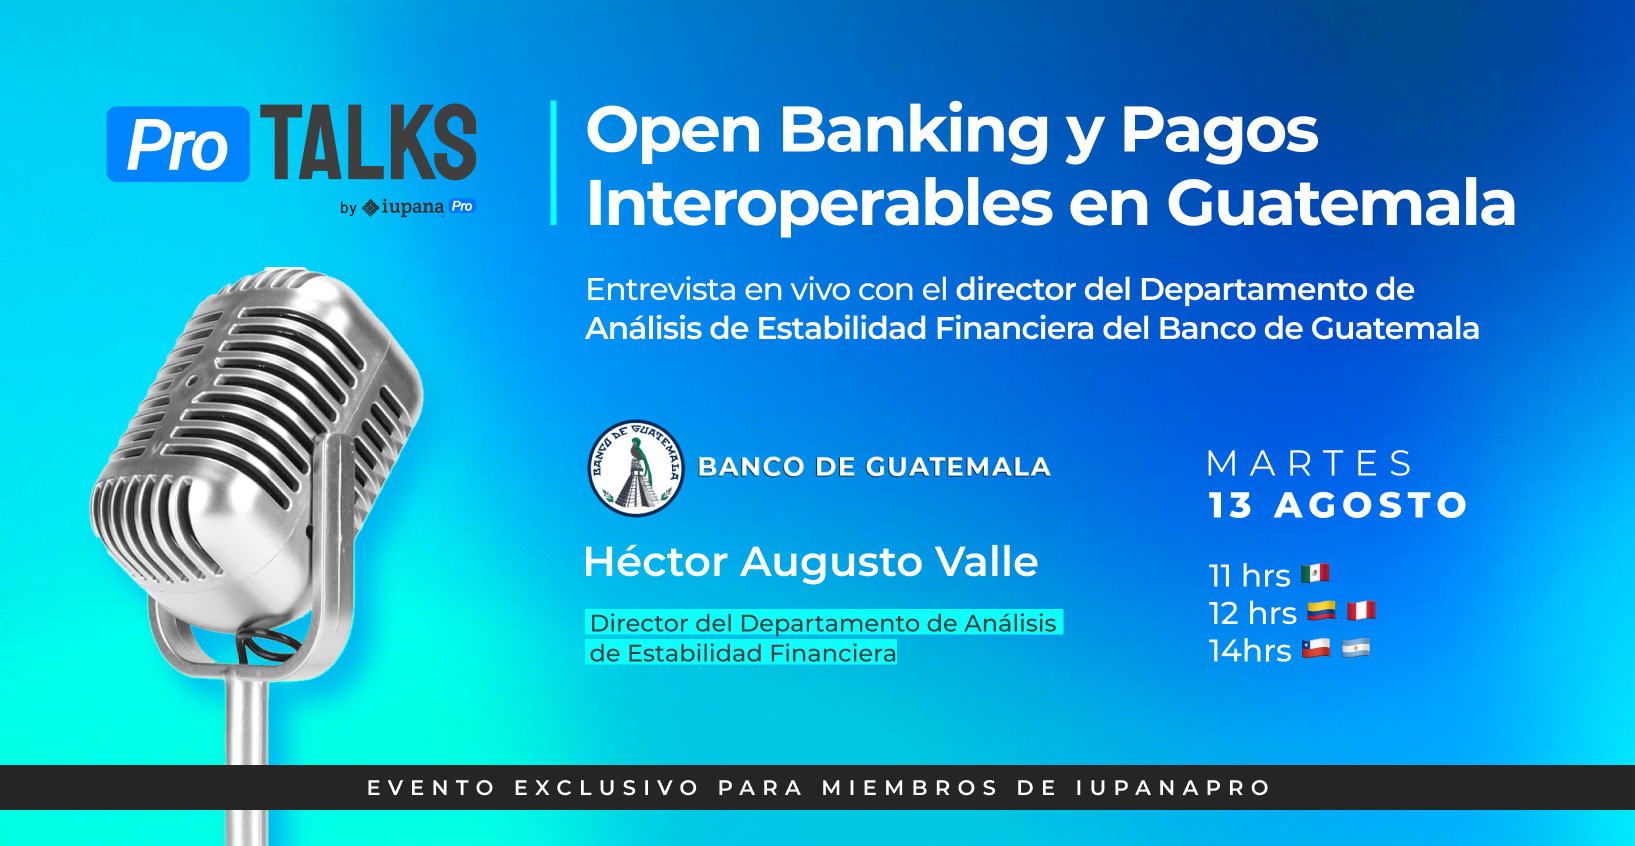 Open Banking y Pagos Interoperables en Guatemala, Entrevista en directo con el Banco de Guatemala